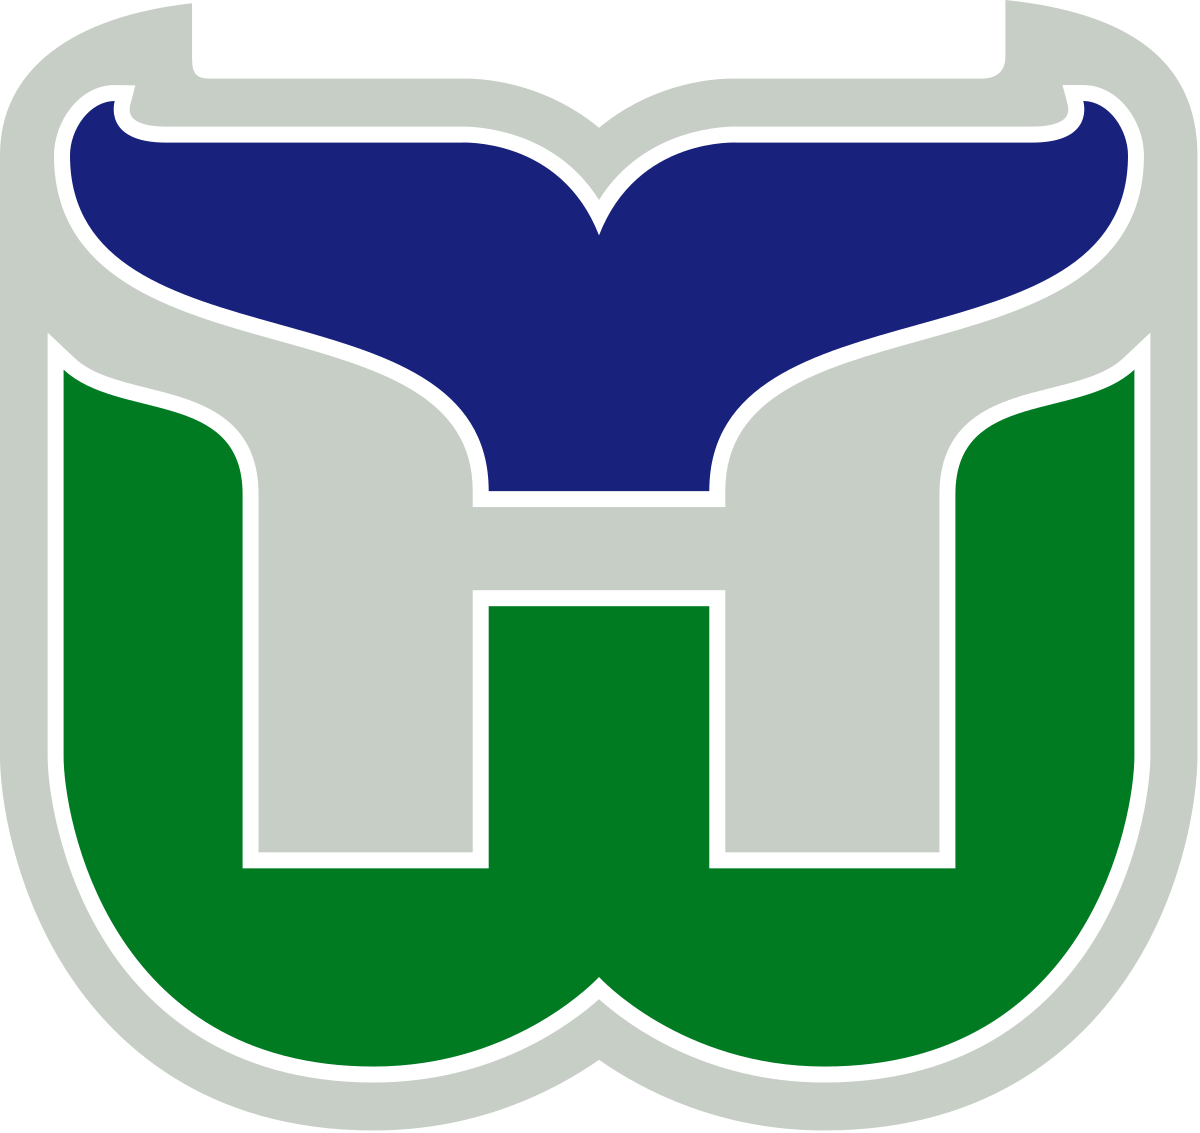 Whalers Logo - Hartford Whalers